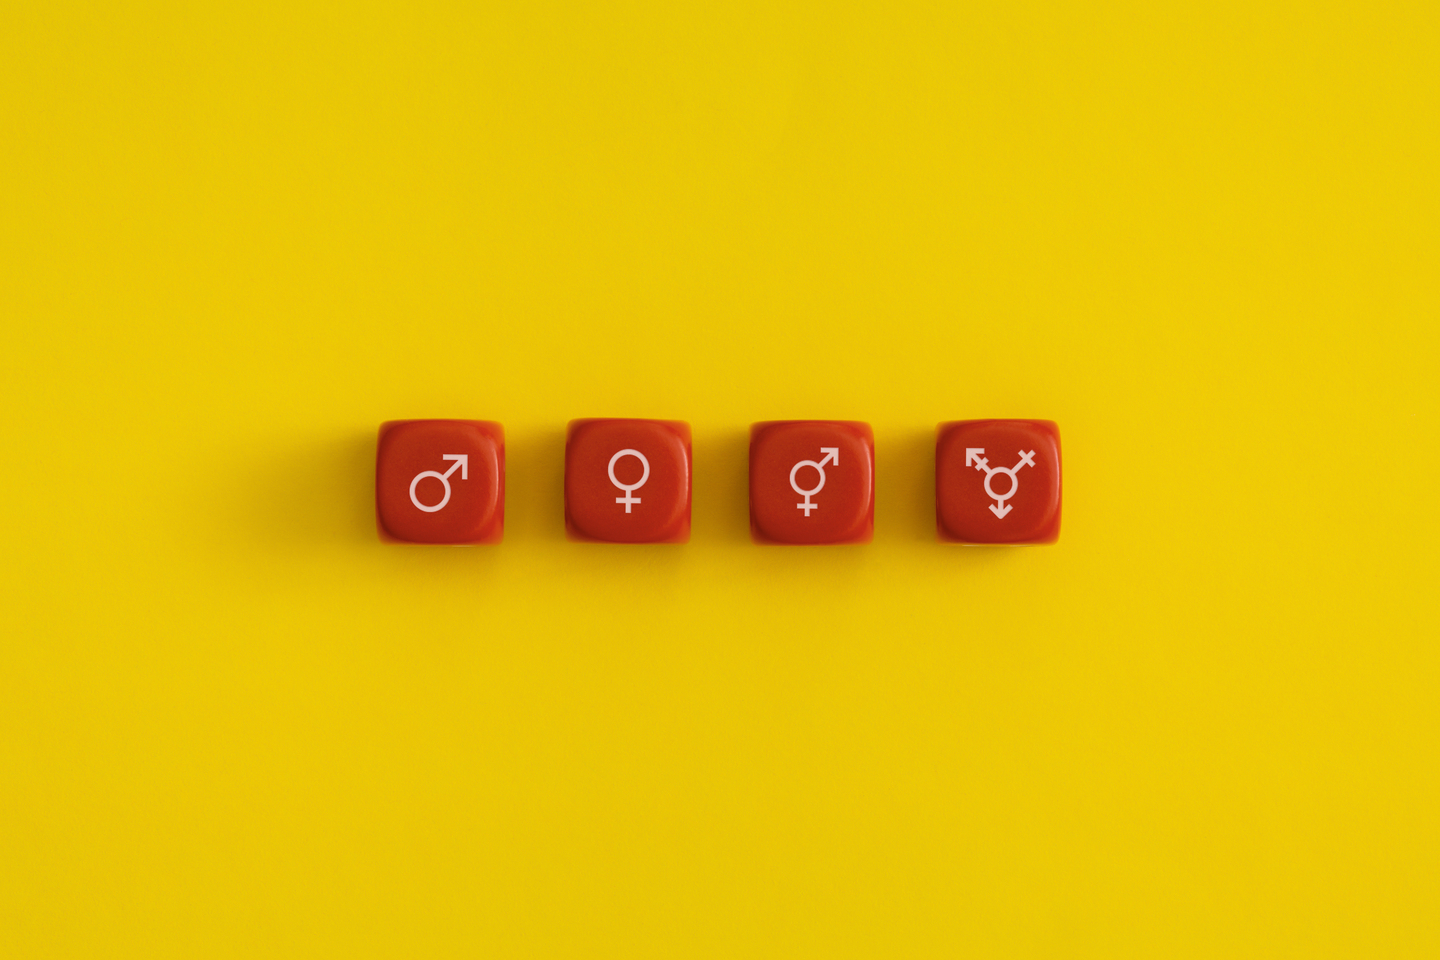 imagen de dados con los símbolos de las diferentes identidades de género